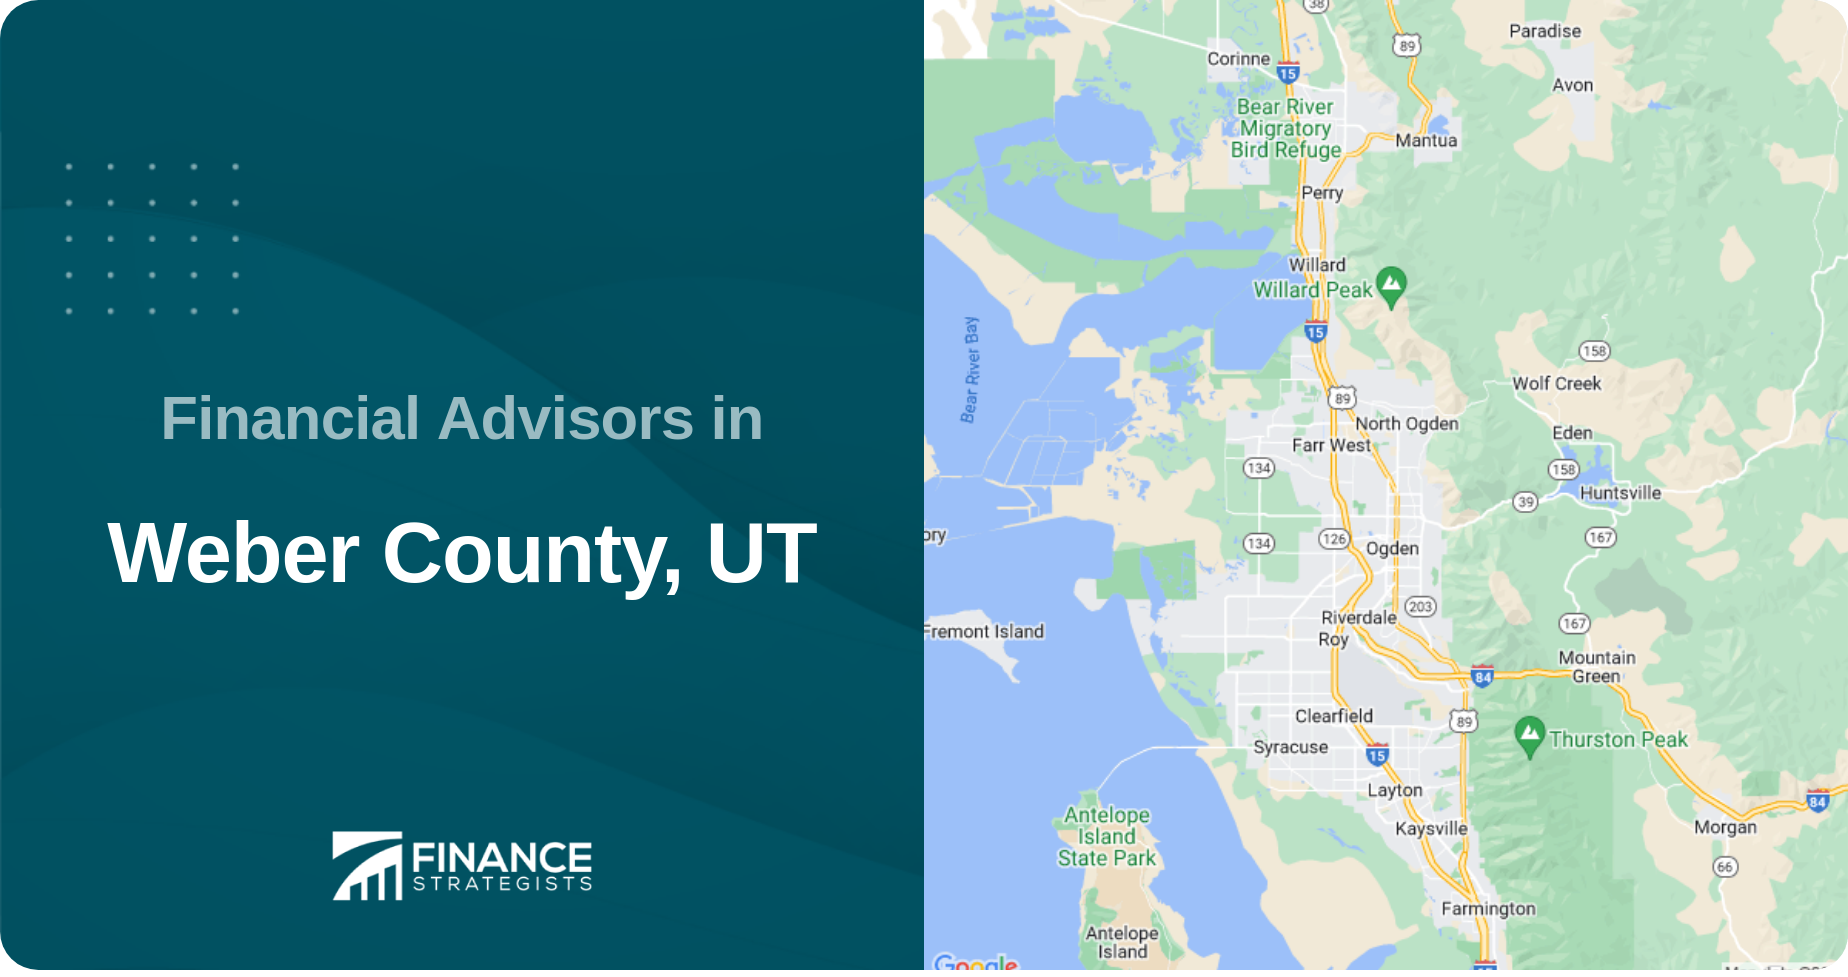 Financial Advisors in Weber County, UT